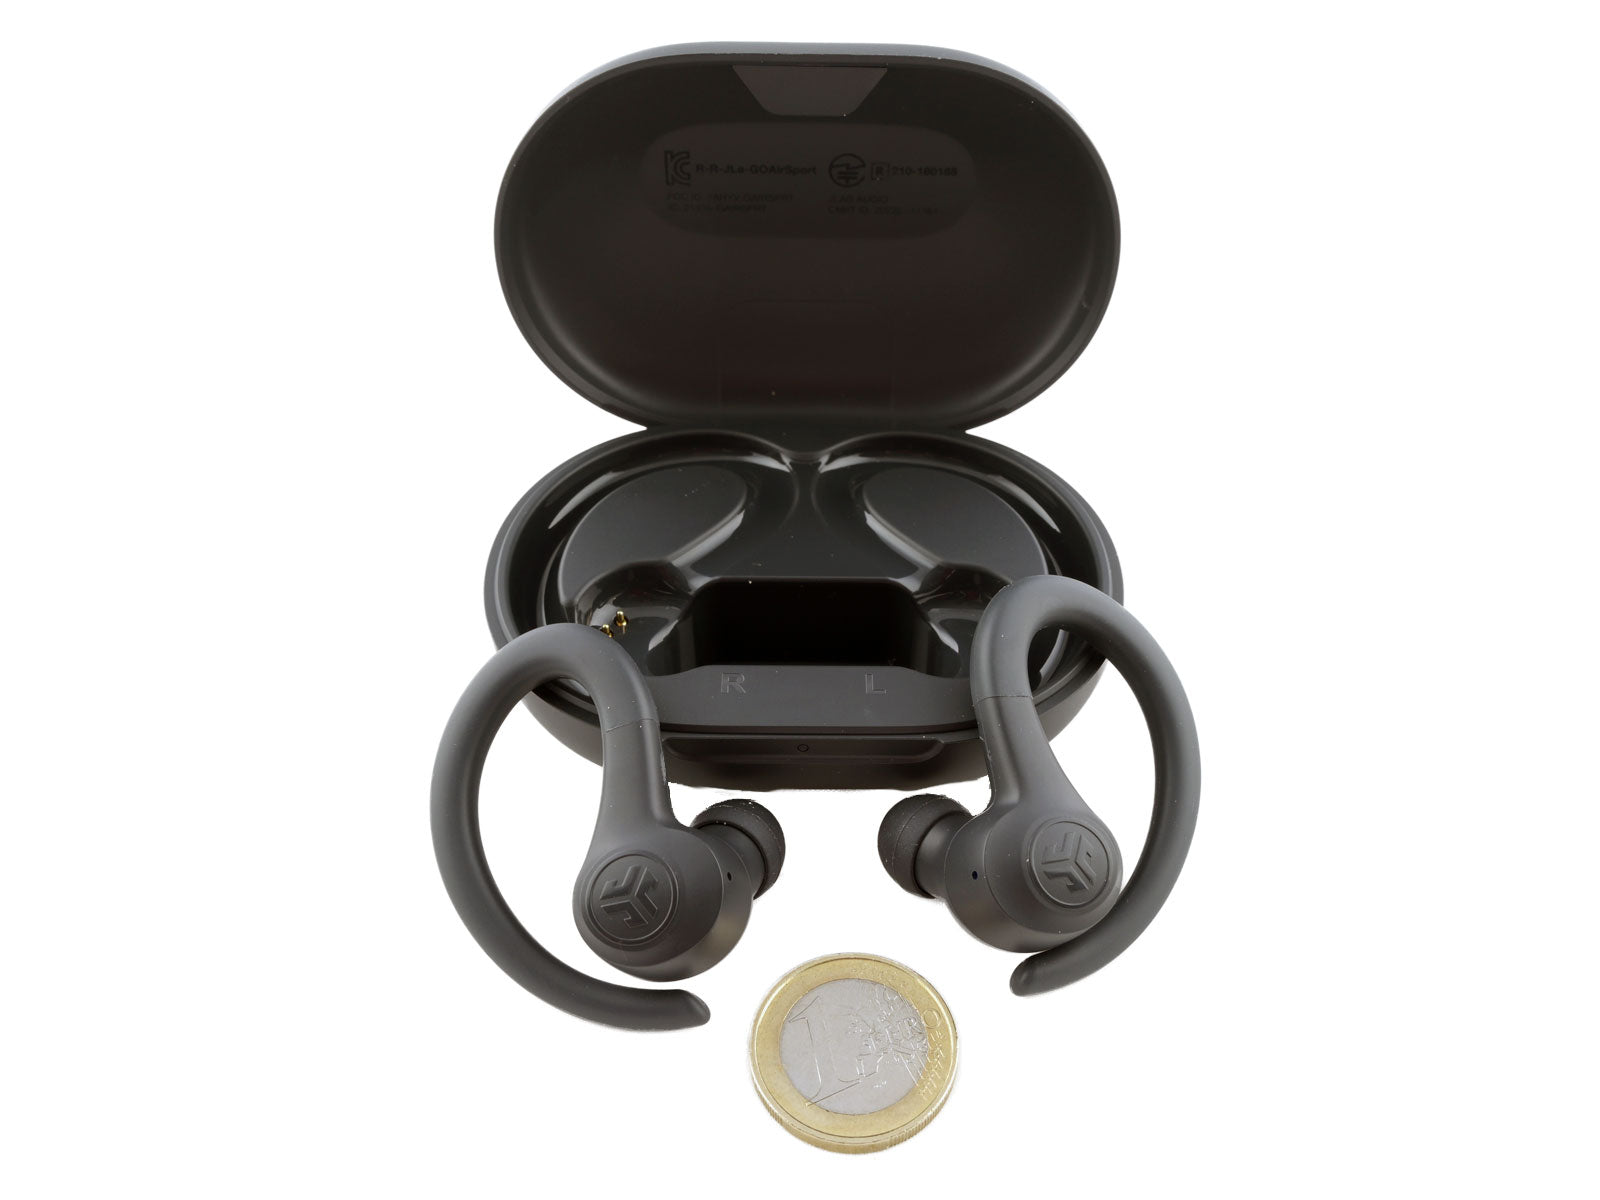 JLab GO Air Sport True Wireless Earbuds In-Ear Kopfhörer Schwarze kabellose Ohrhörer befinden sich vor einem offenen Ladeetui, das zum Größenvergleich über einer einzelnen Euro-Münze positioniert ist. Die Ohrhörer verfügen über Ohrbügel für sicheren Halt.